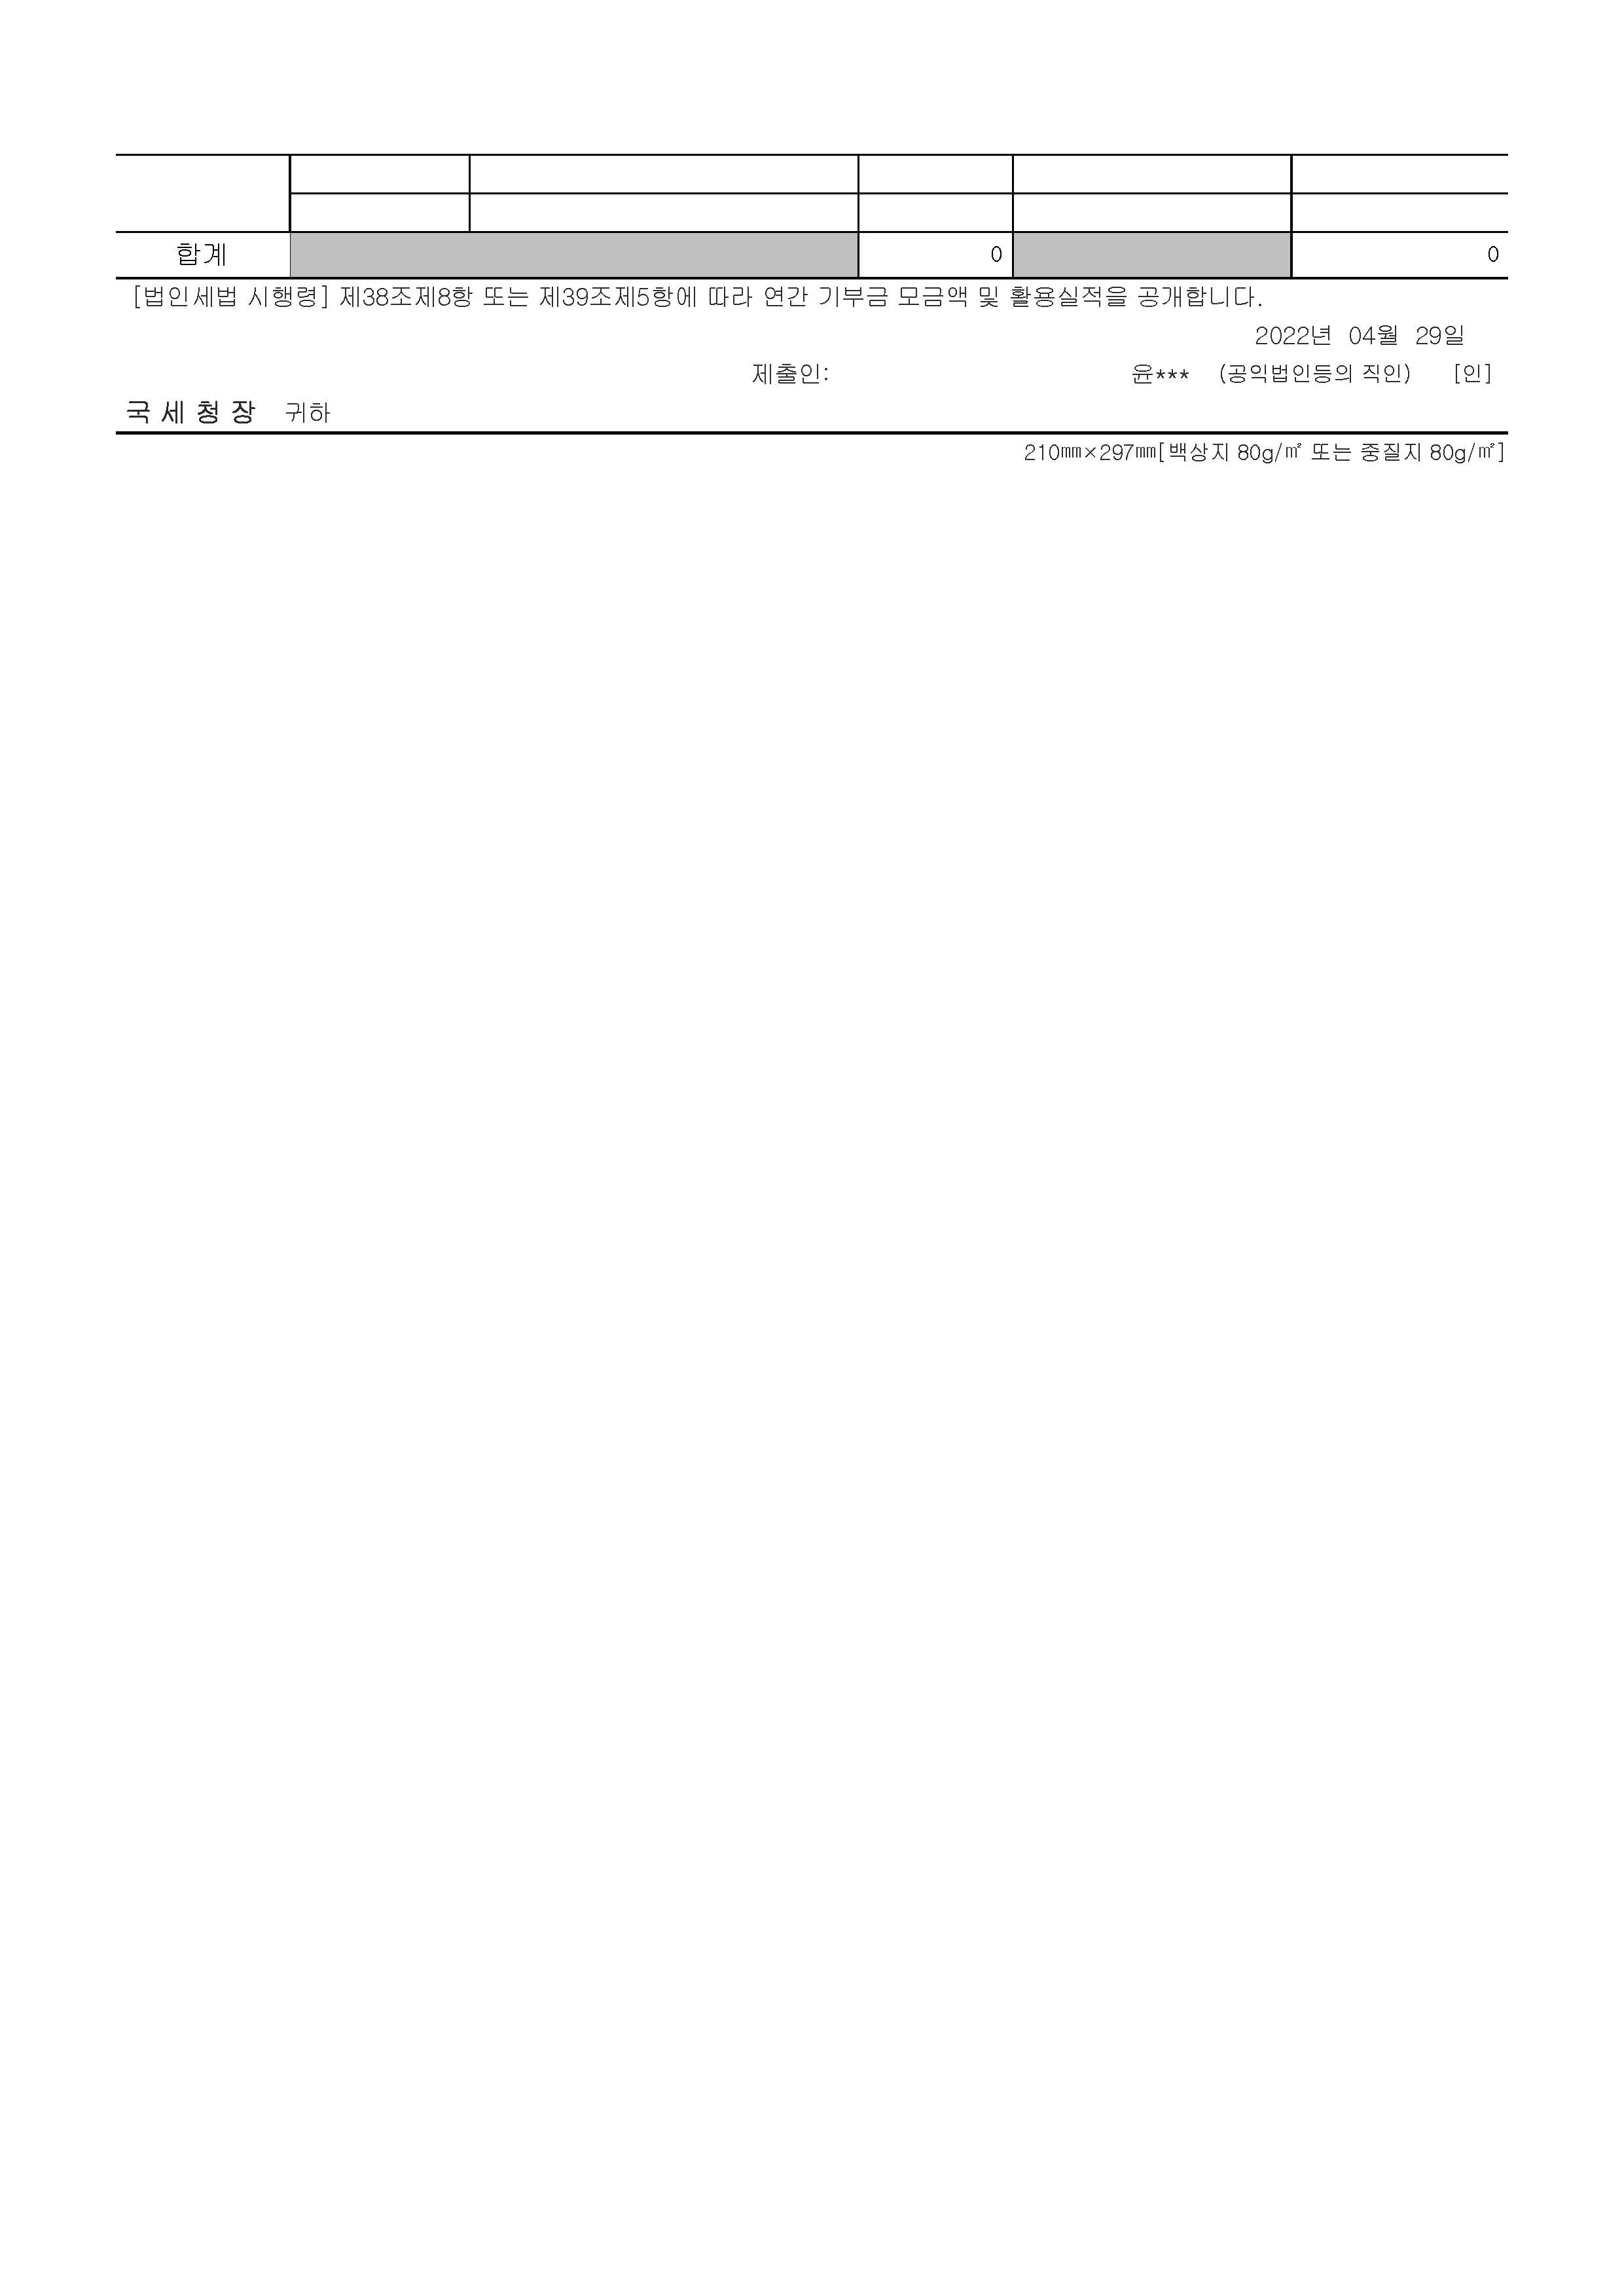 3. 서울스프링_2021년 연간기부금모금액및 활용실적명세서 제출분_페이지_2